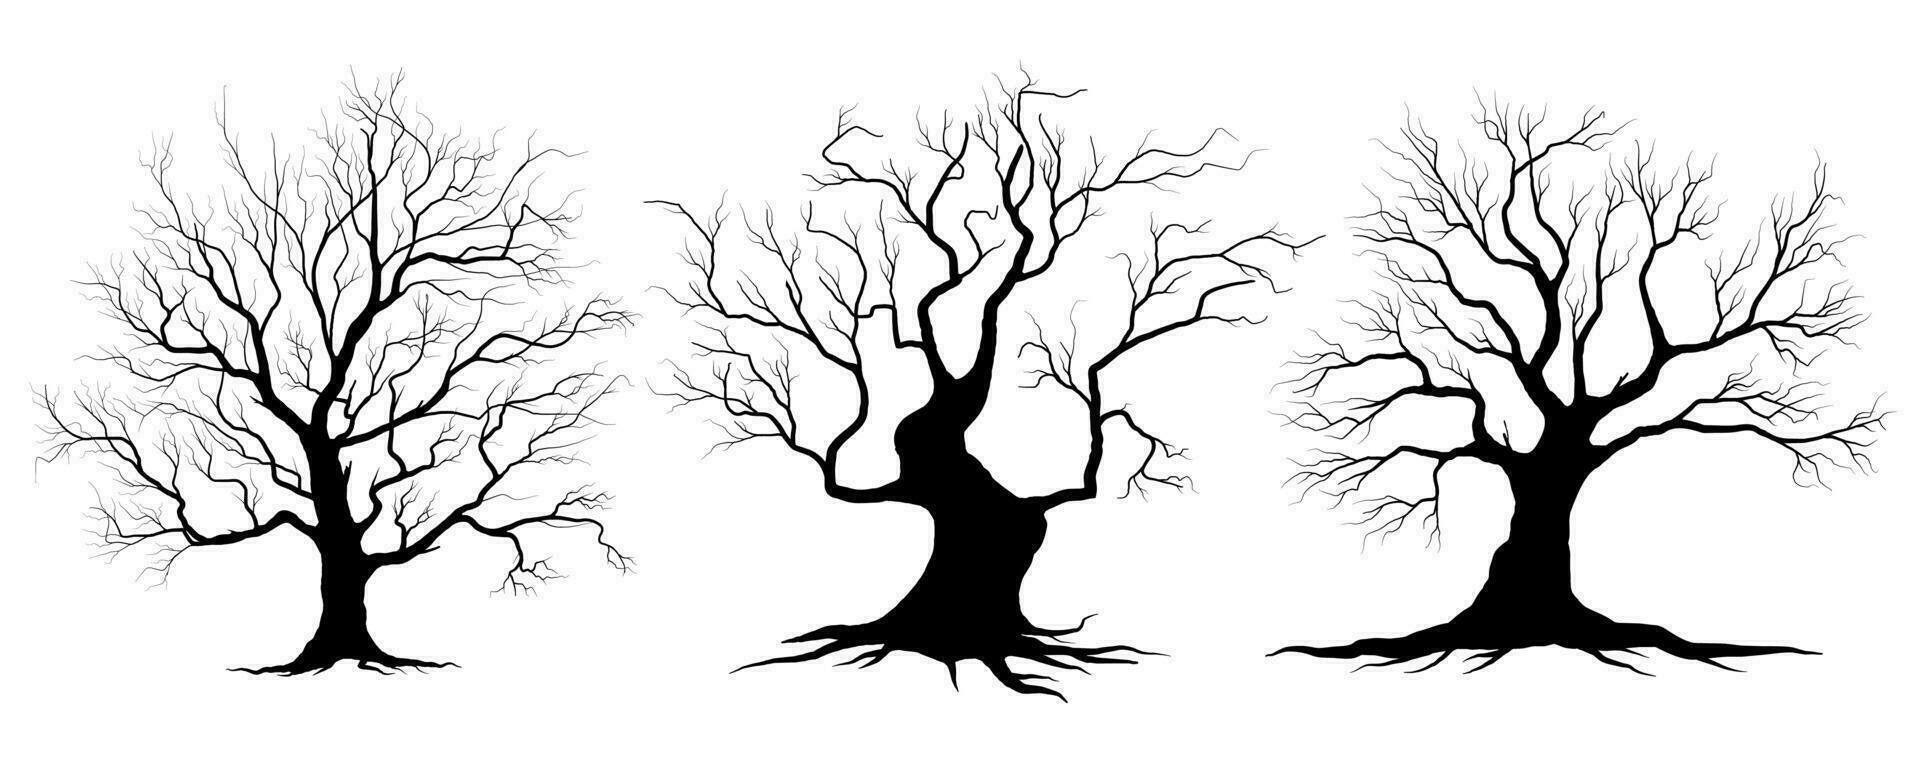 groß Sammlung schwarz Baum oder nackt Bäume Silhouetten Vektor. Hand gezeichnet isoliert Illustrationen. vektor